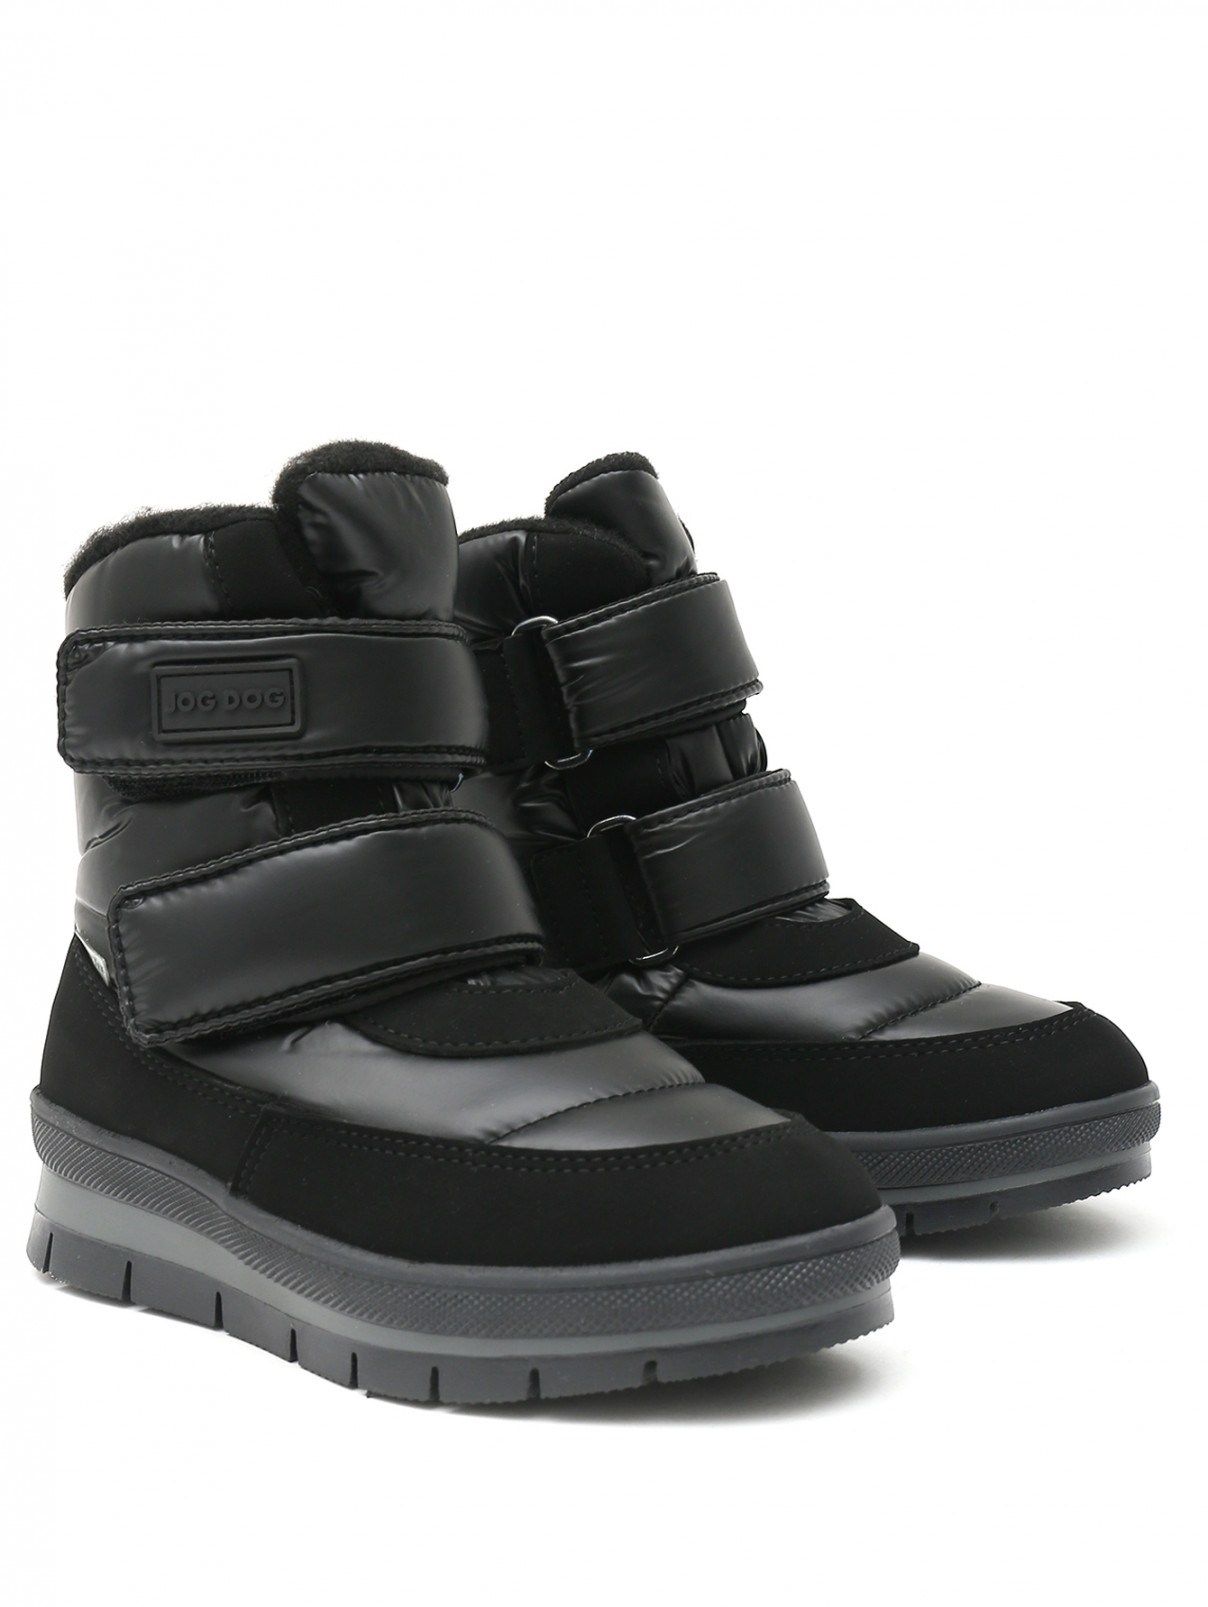 Утепленные ботинки с липучкой JOG DOG  –  Общий вид  – Цвет:  Черный